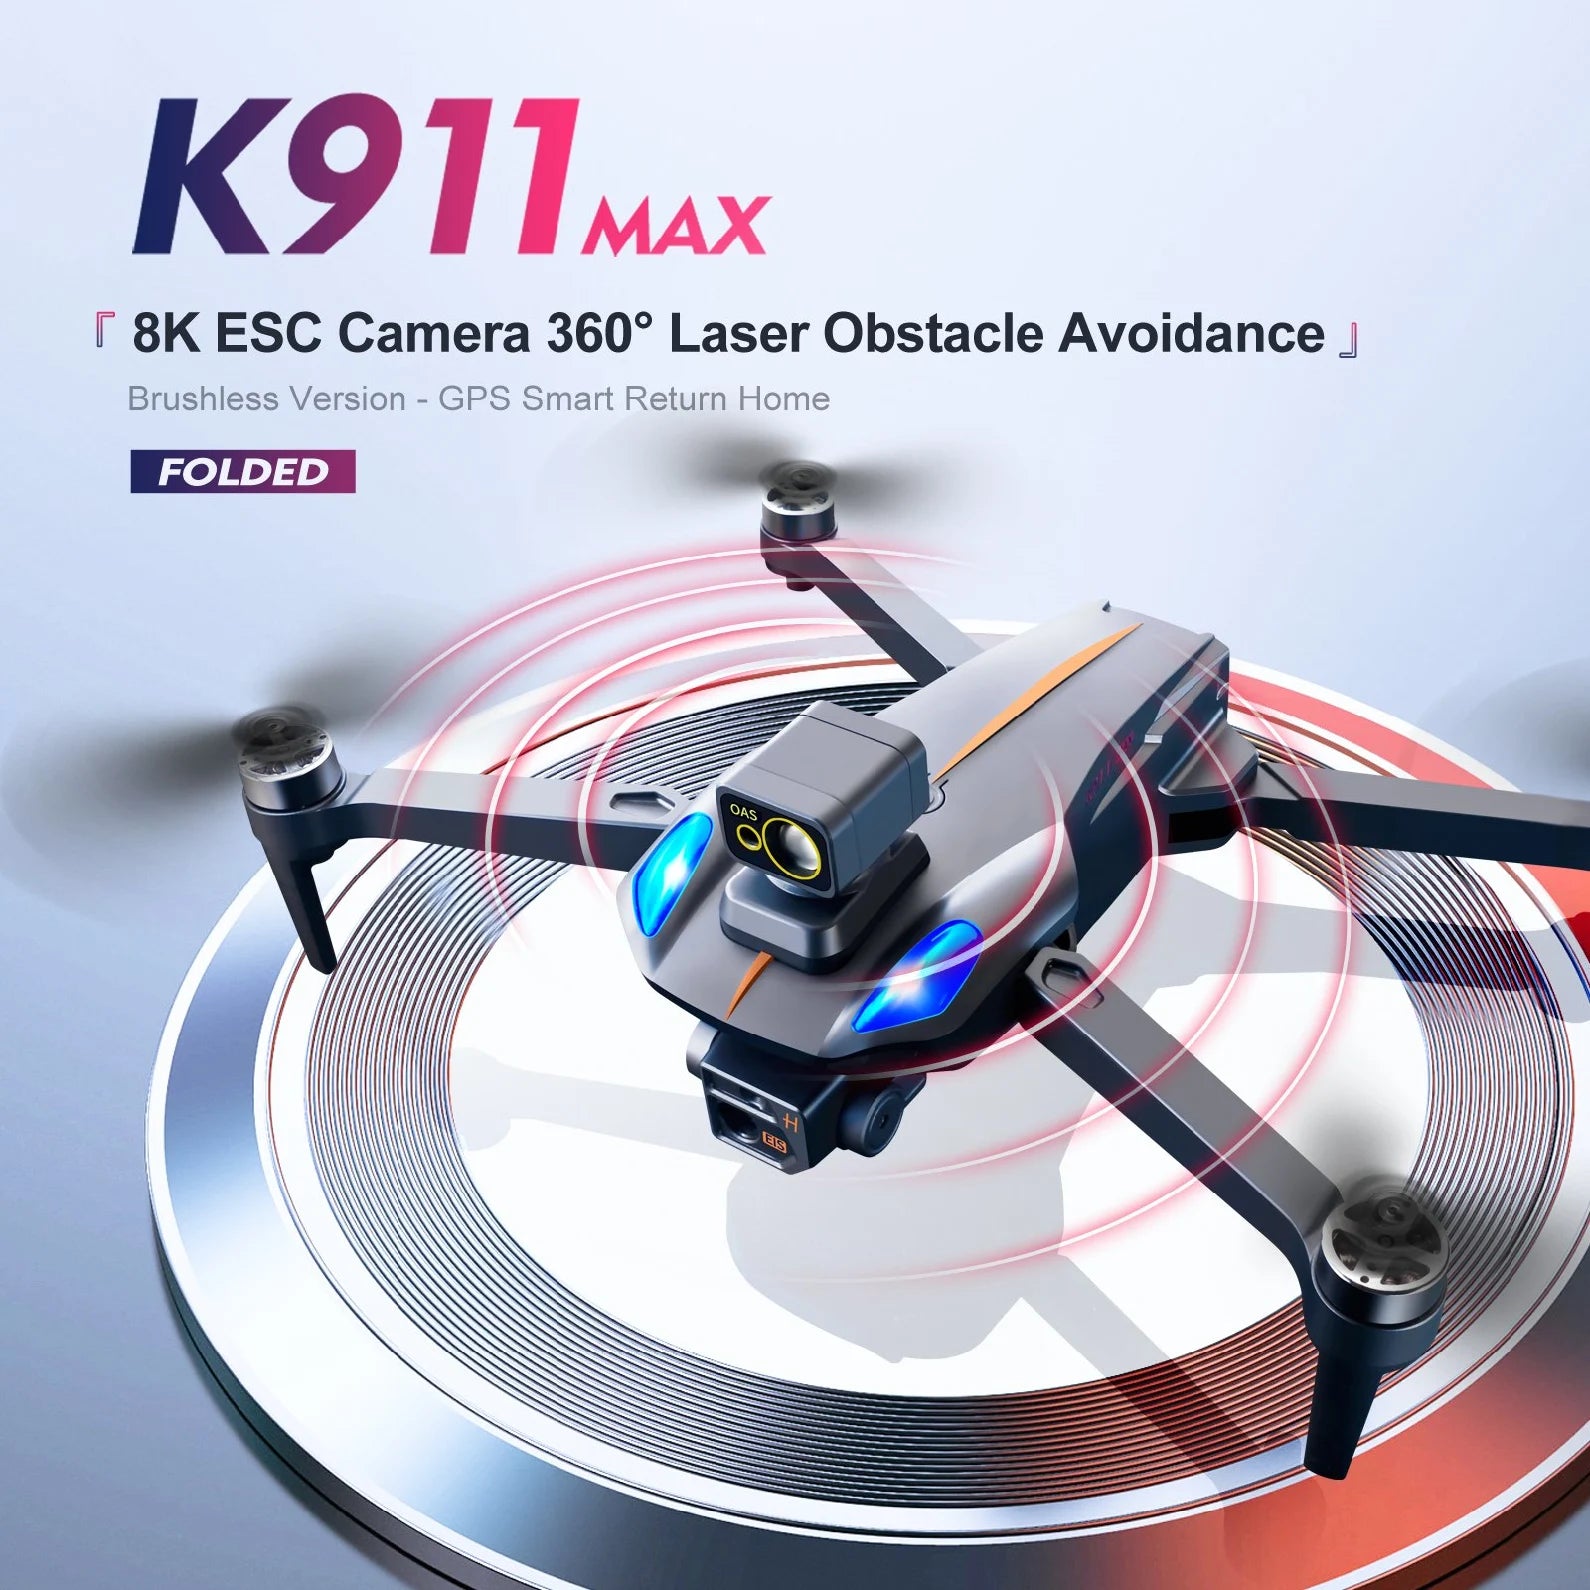 K911 MAX 8K ESC Camera 3600 Laser Obstacle Avoidance Brush